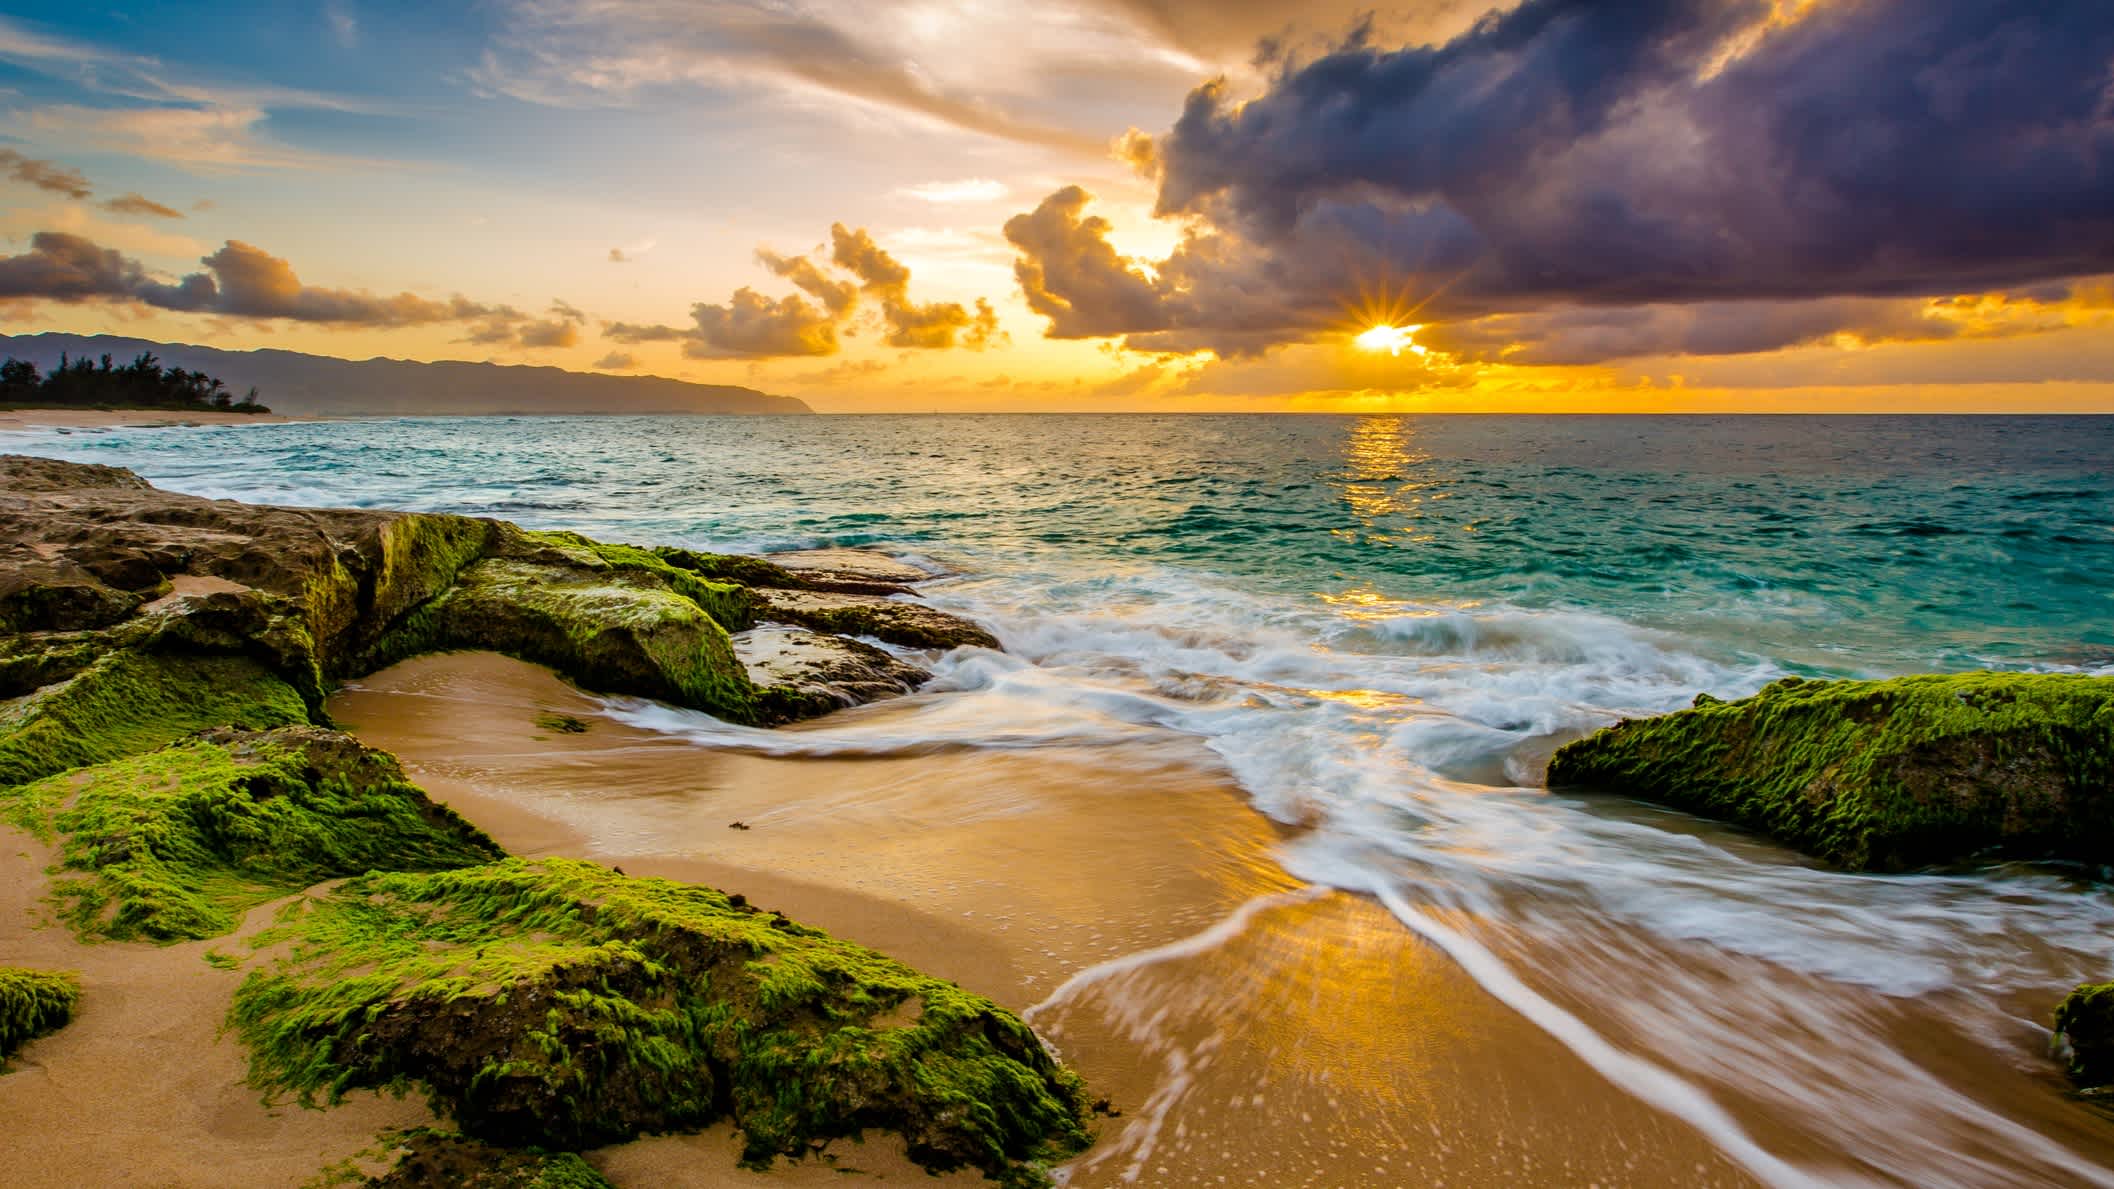 États-Unis, Hawaï, un coucher de soleil le long de la côte nord d'Oahu.

